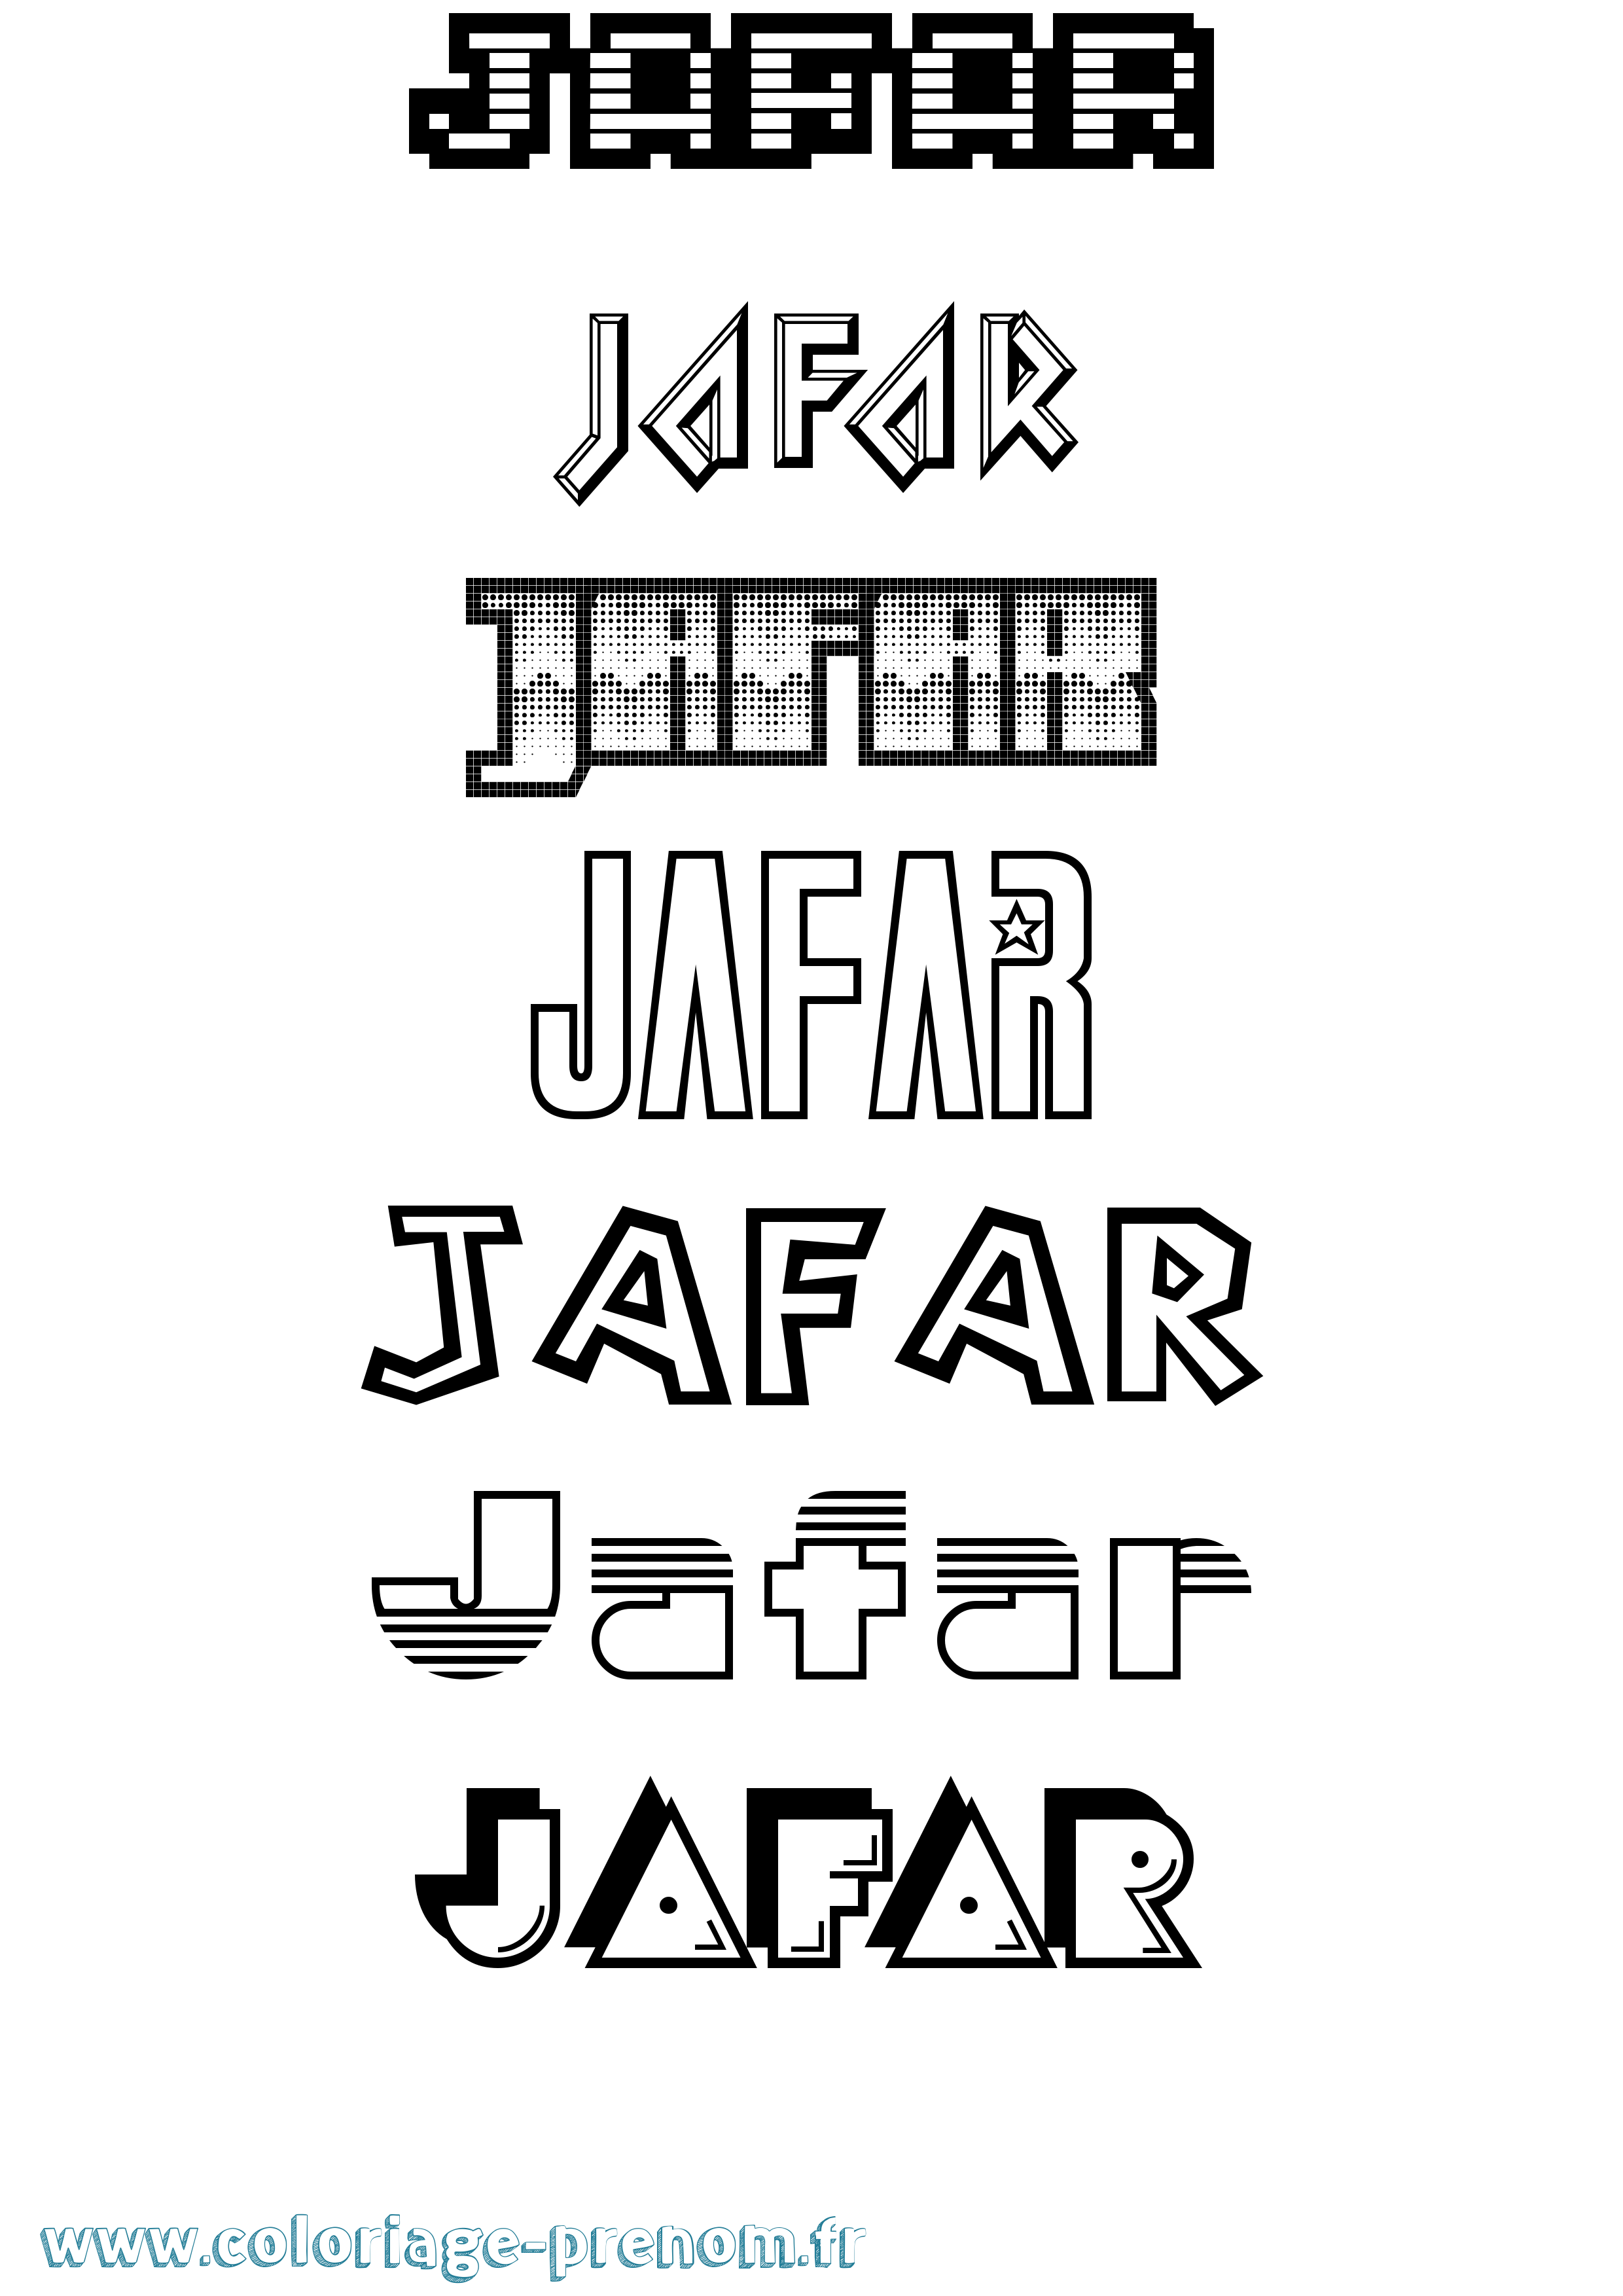 Coloriage prénom Jafar Jeux Vidéos